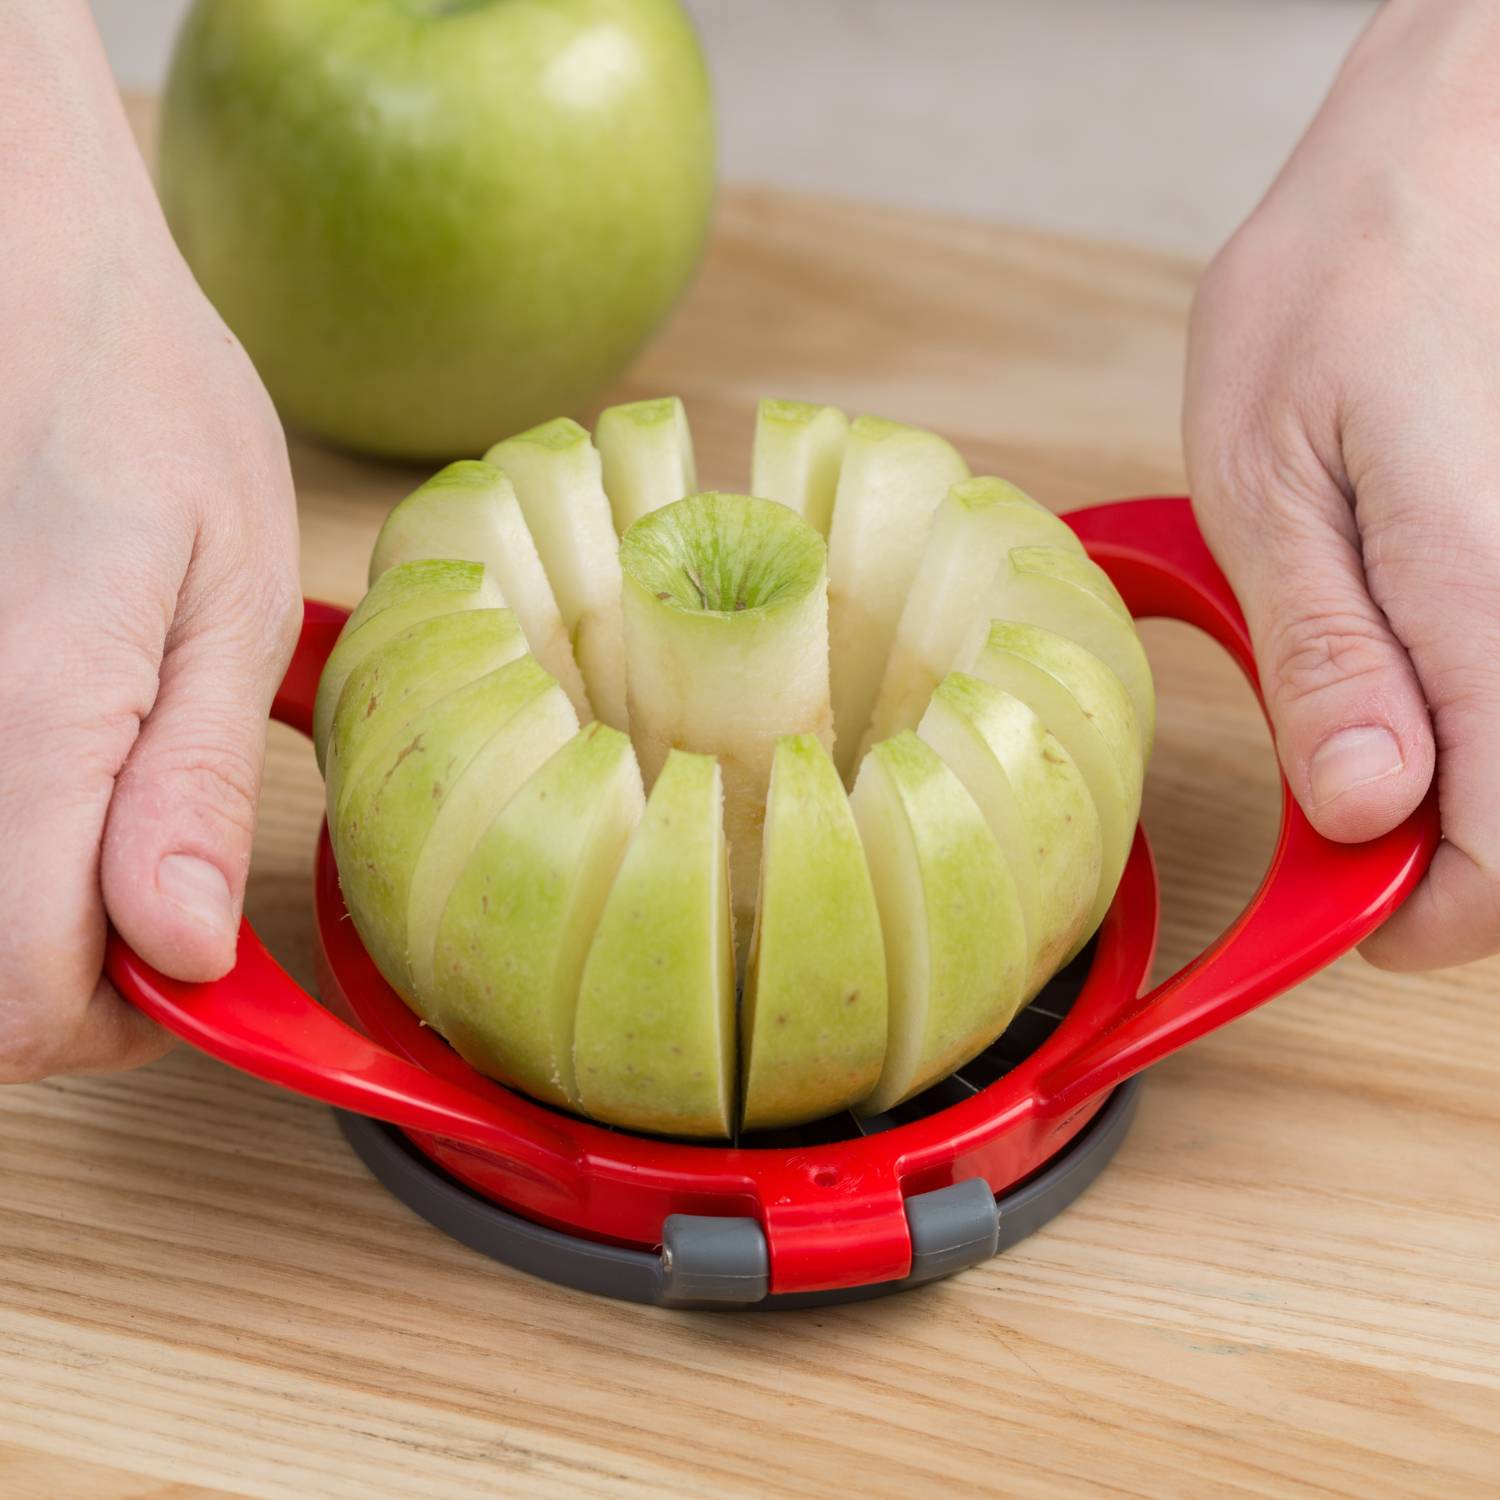 Progressive Thin Apple Slicer - Kitchen & Company